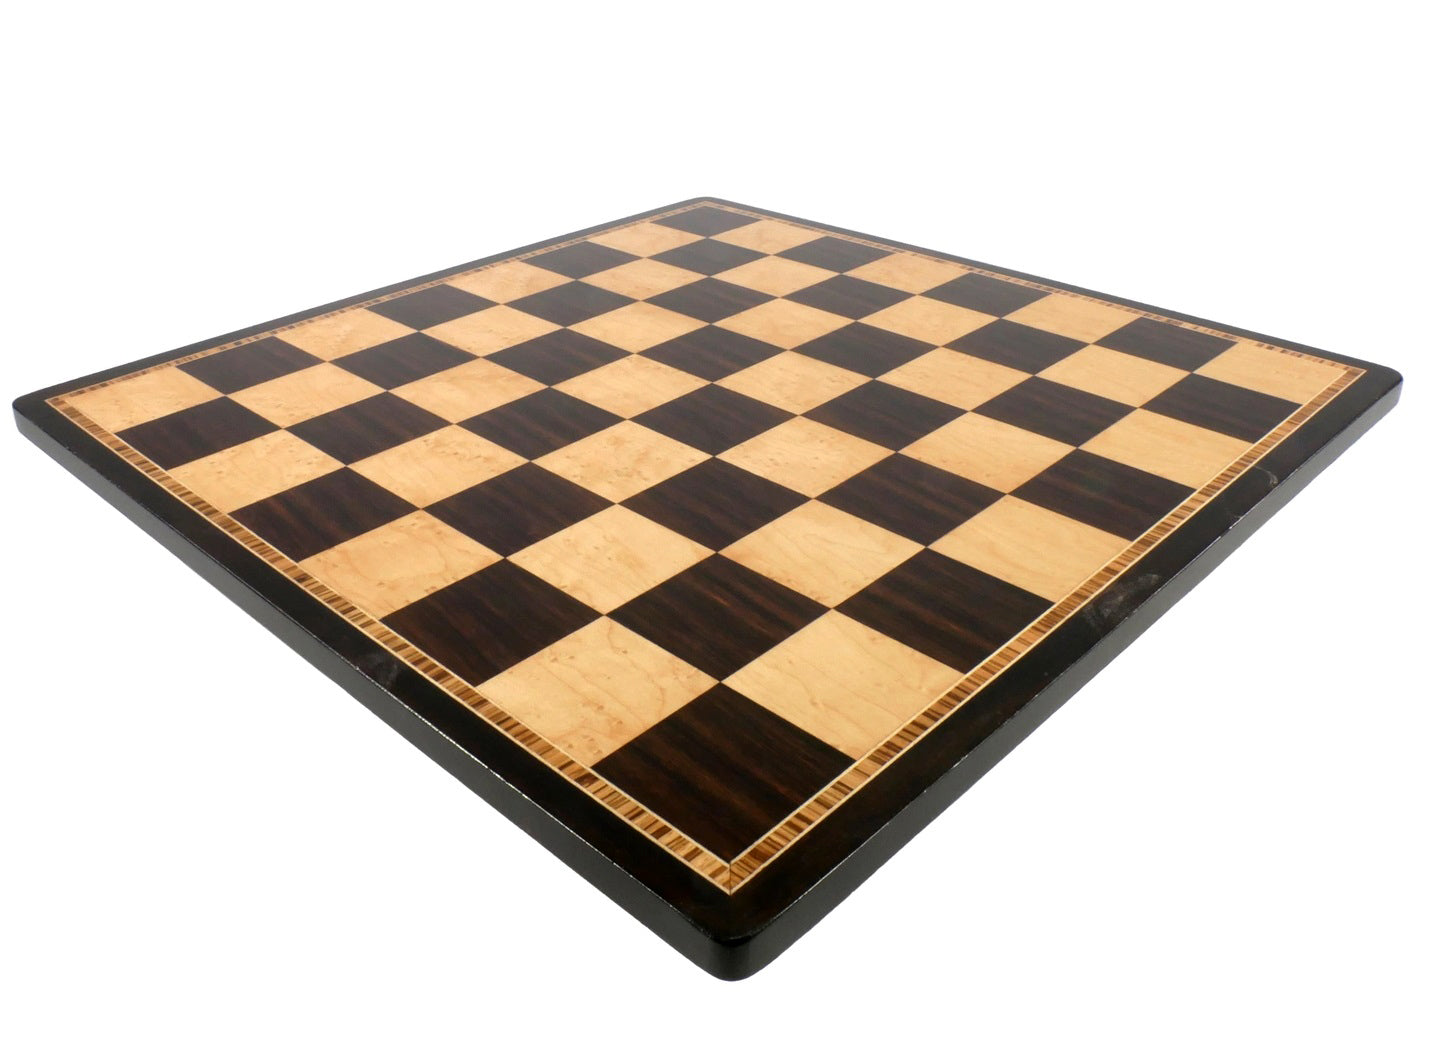 Ebony & Maple Chess Board